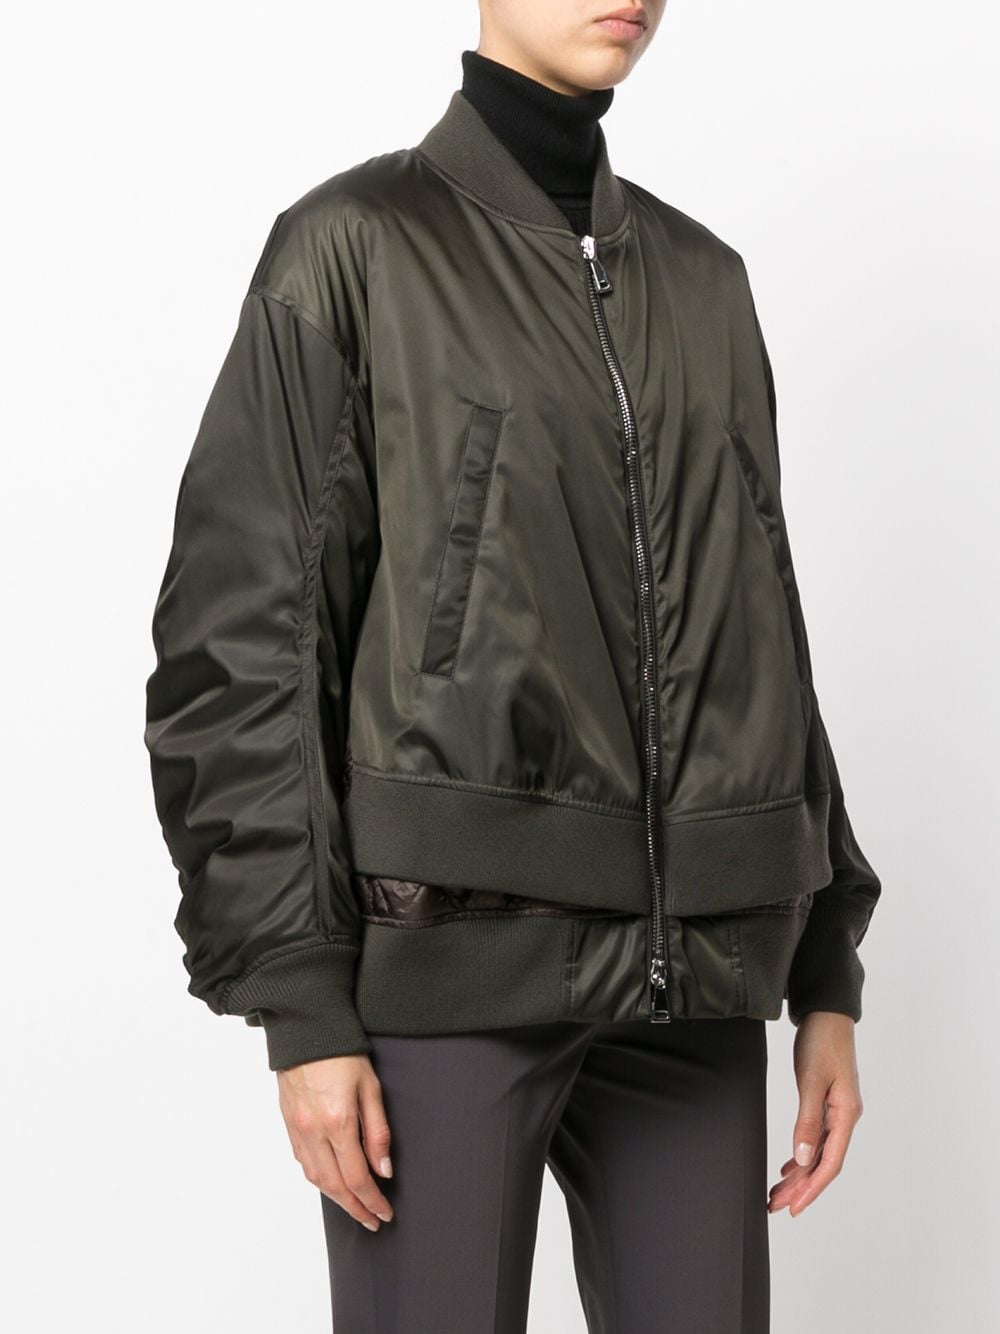 Moncler Aralia bomber jacket $1,895 